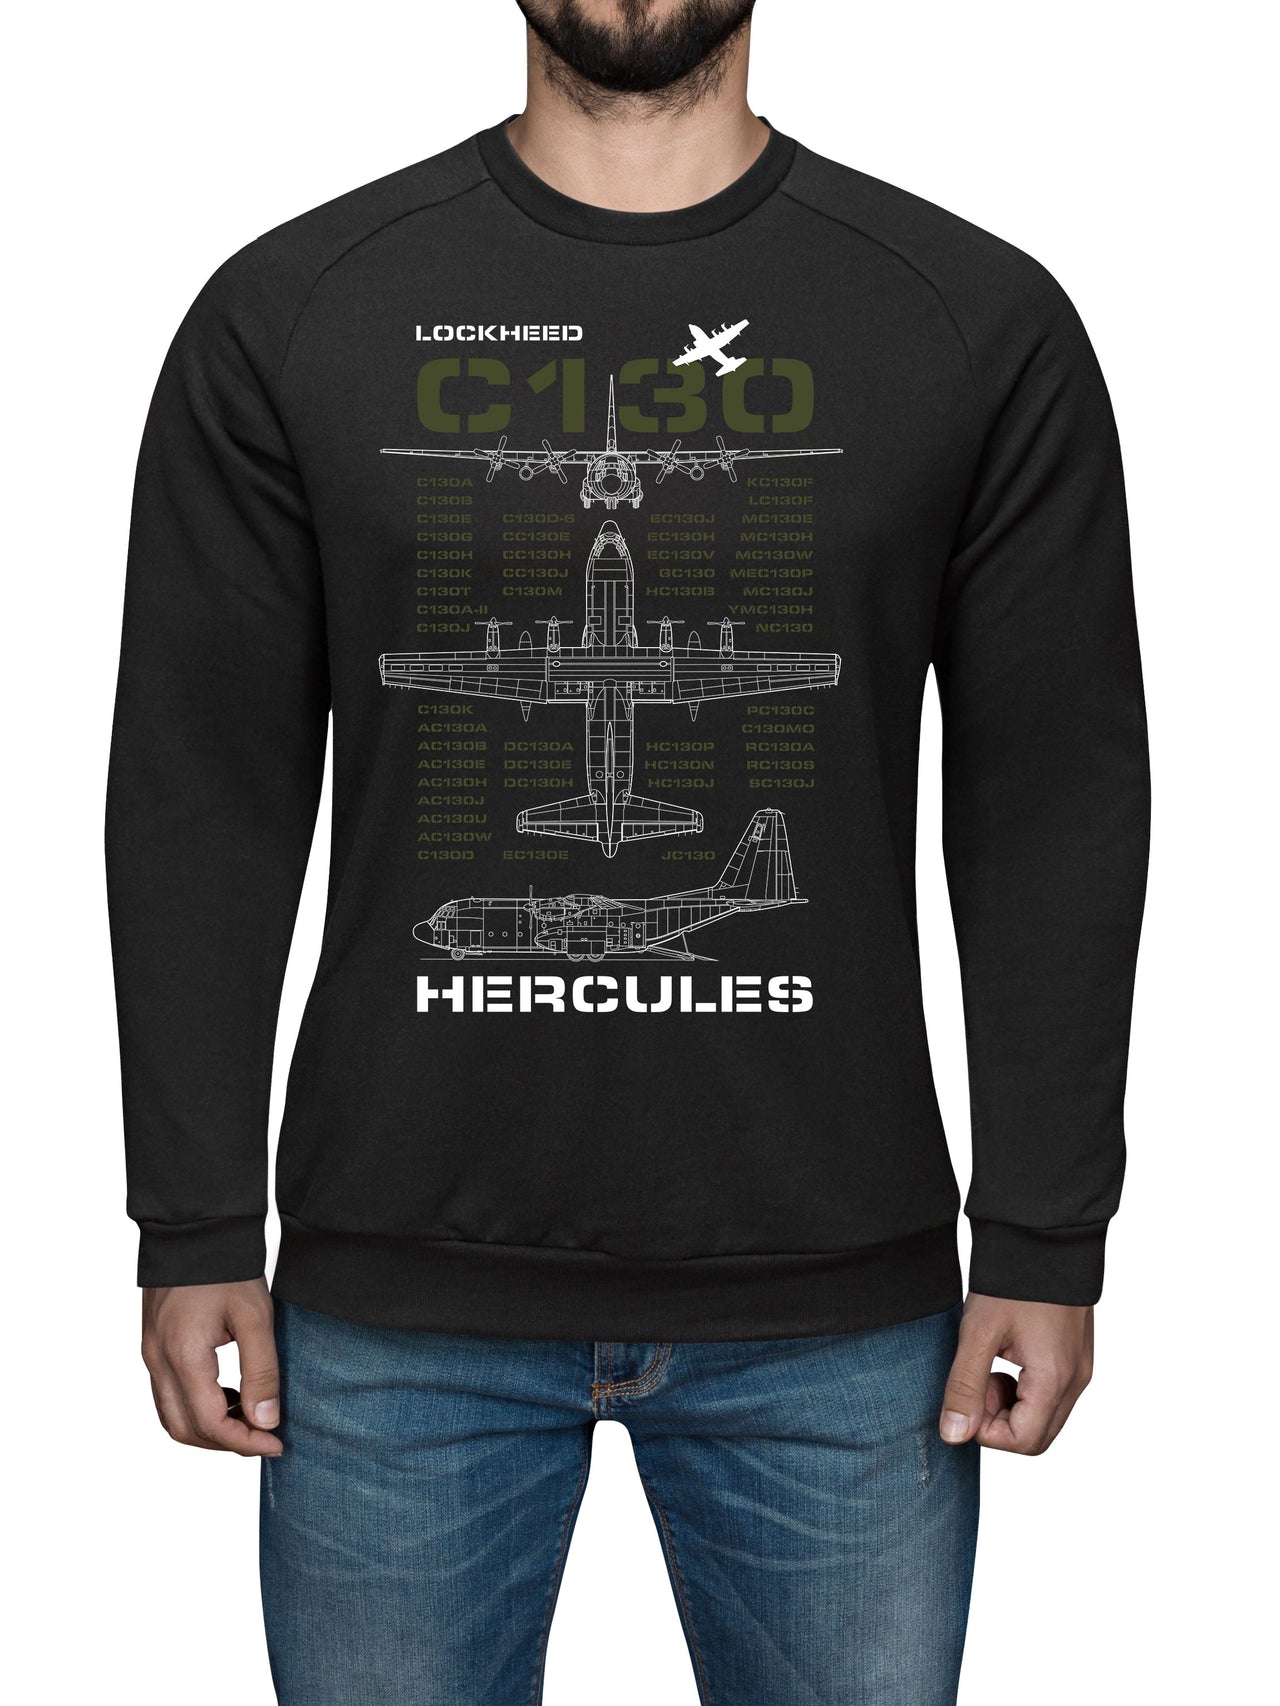 Lockheed C-130 Hercules - Sweat Shirt